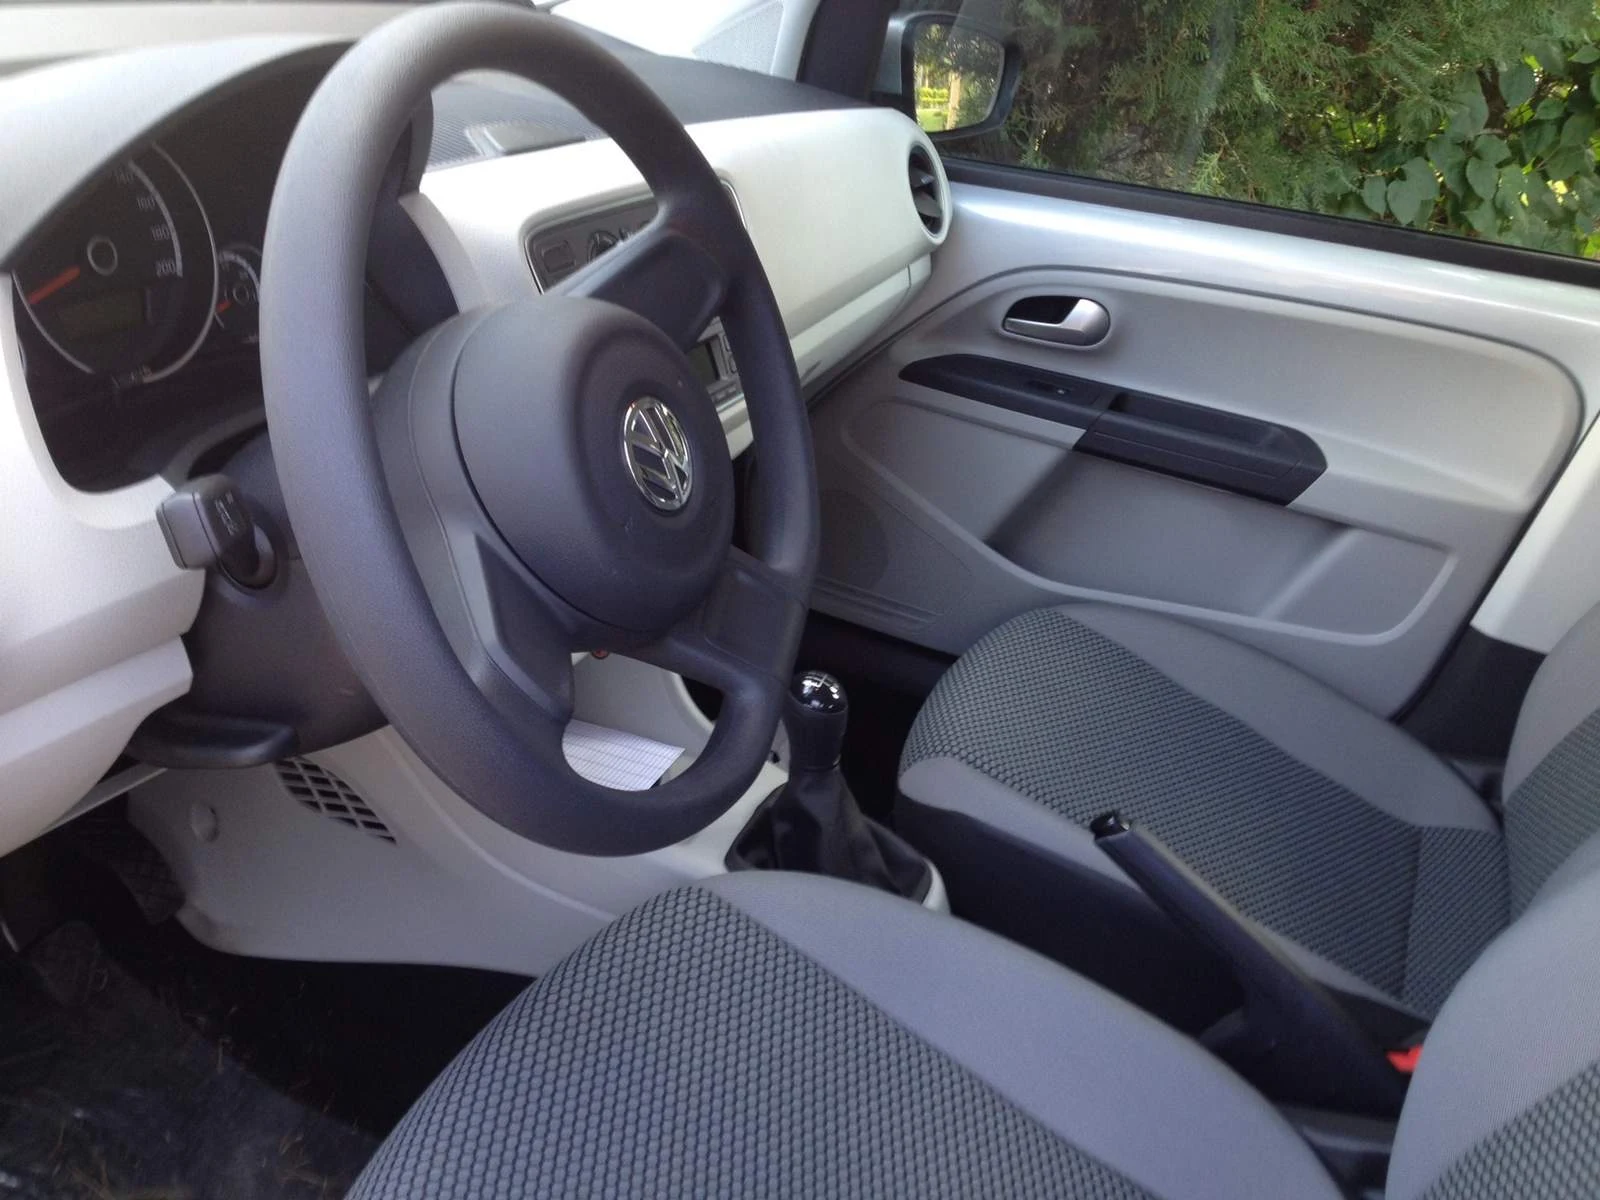 Volkswagen up! - interior